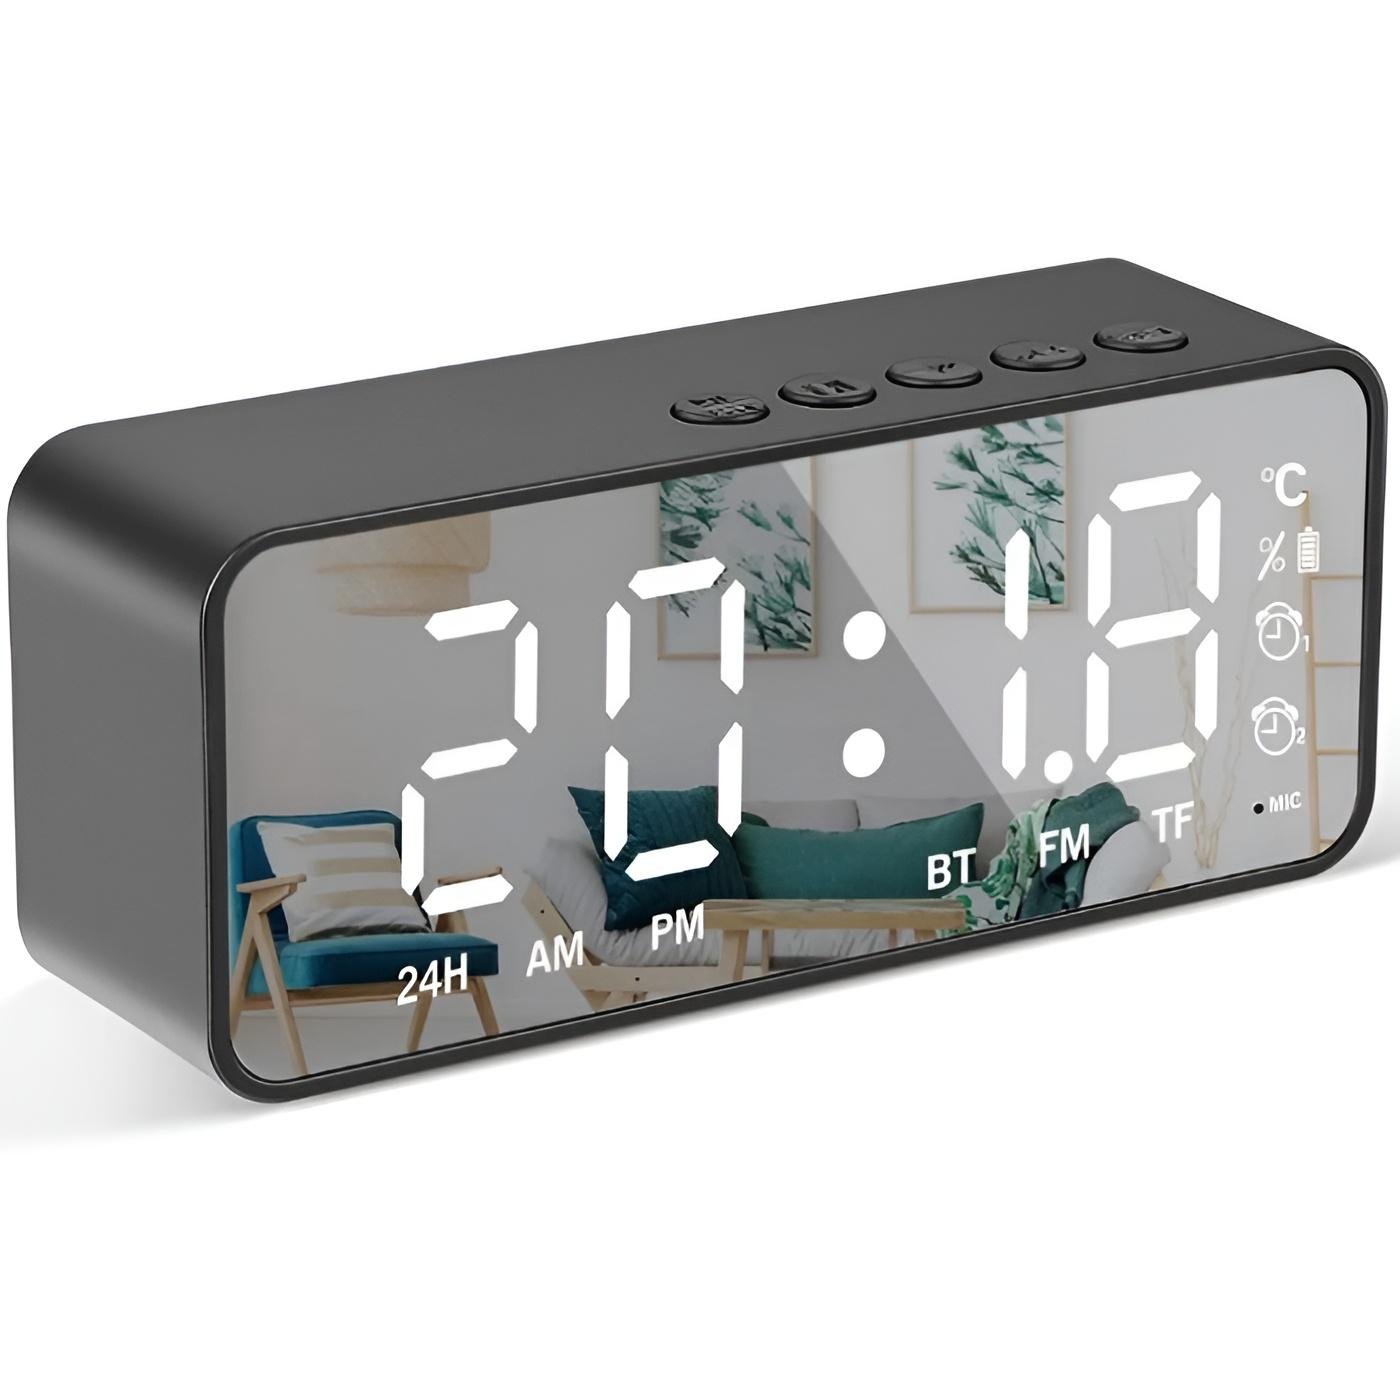 Despertador digital inteligente con botón de repetición de fecha y